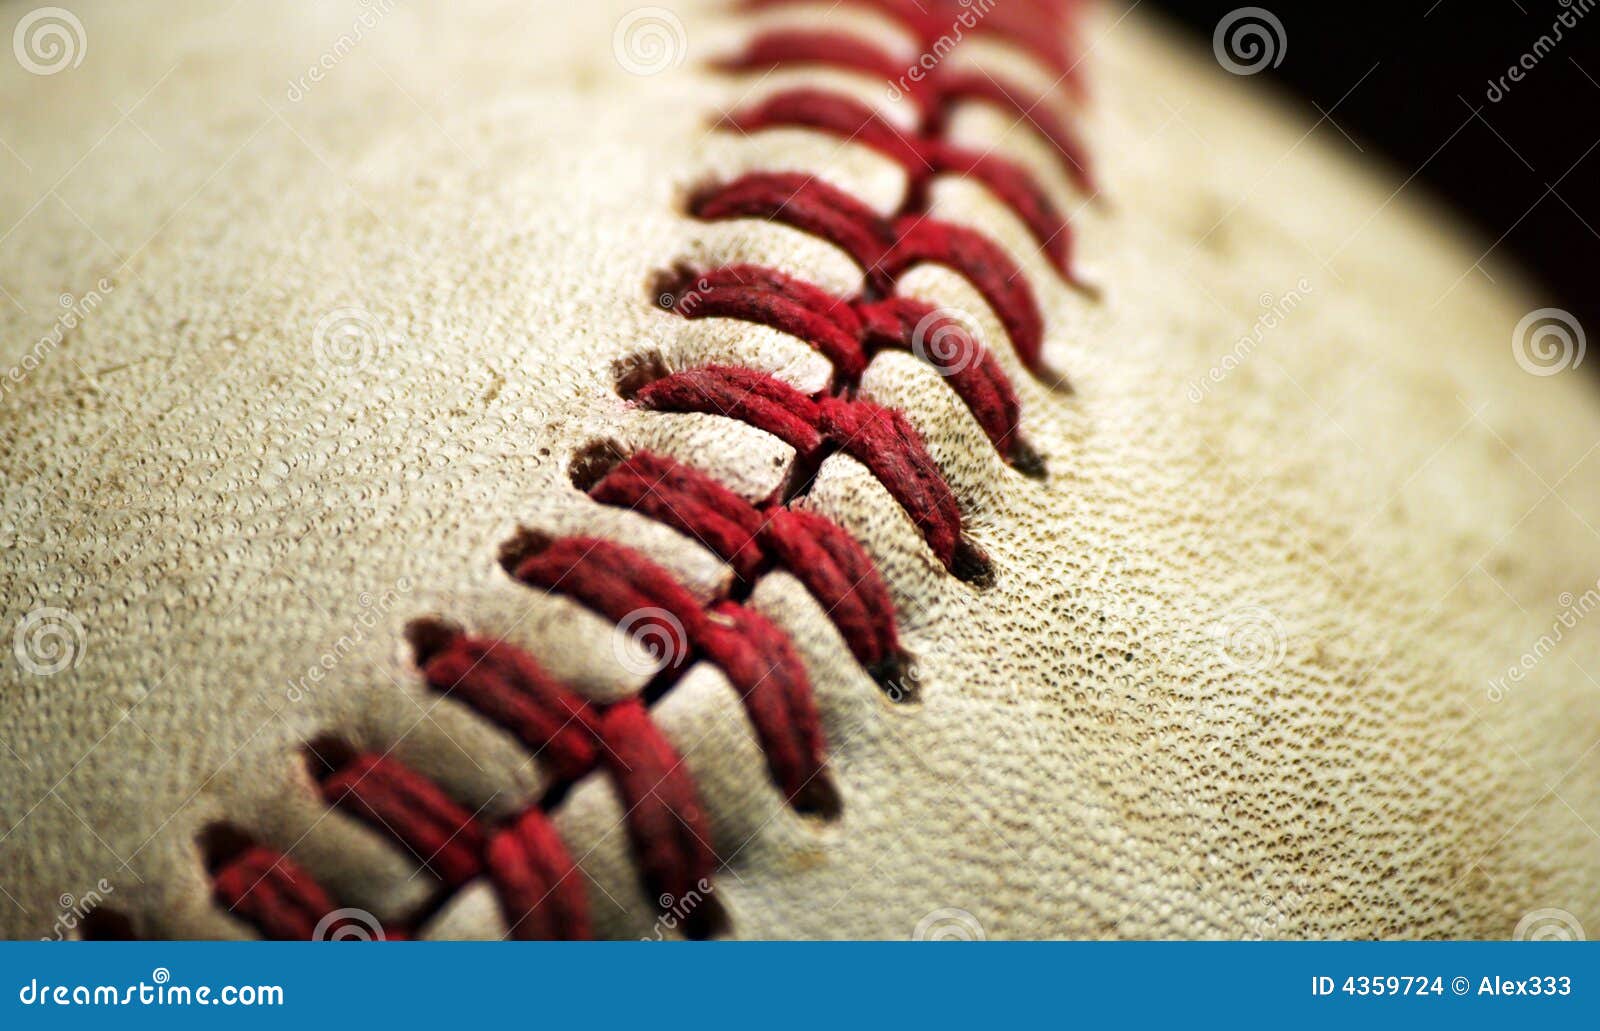 baseball macro closeup